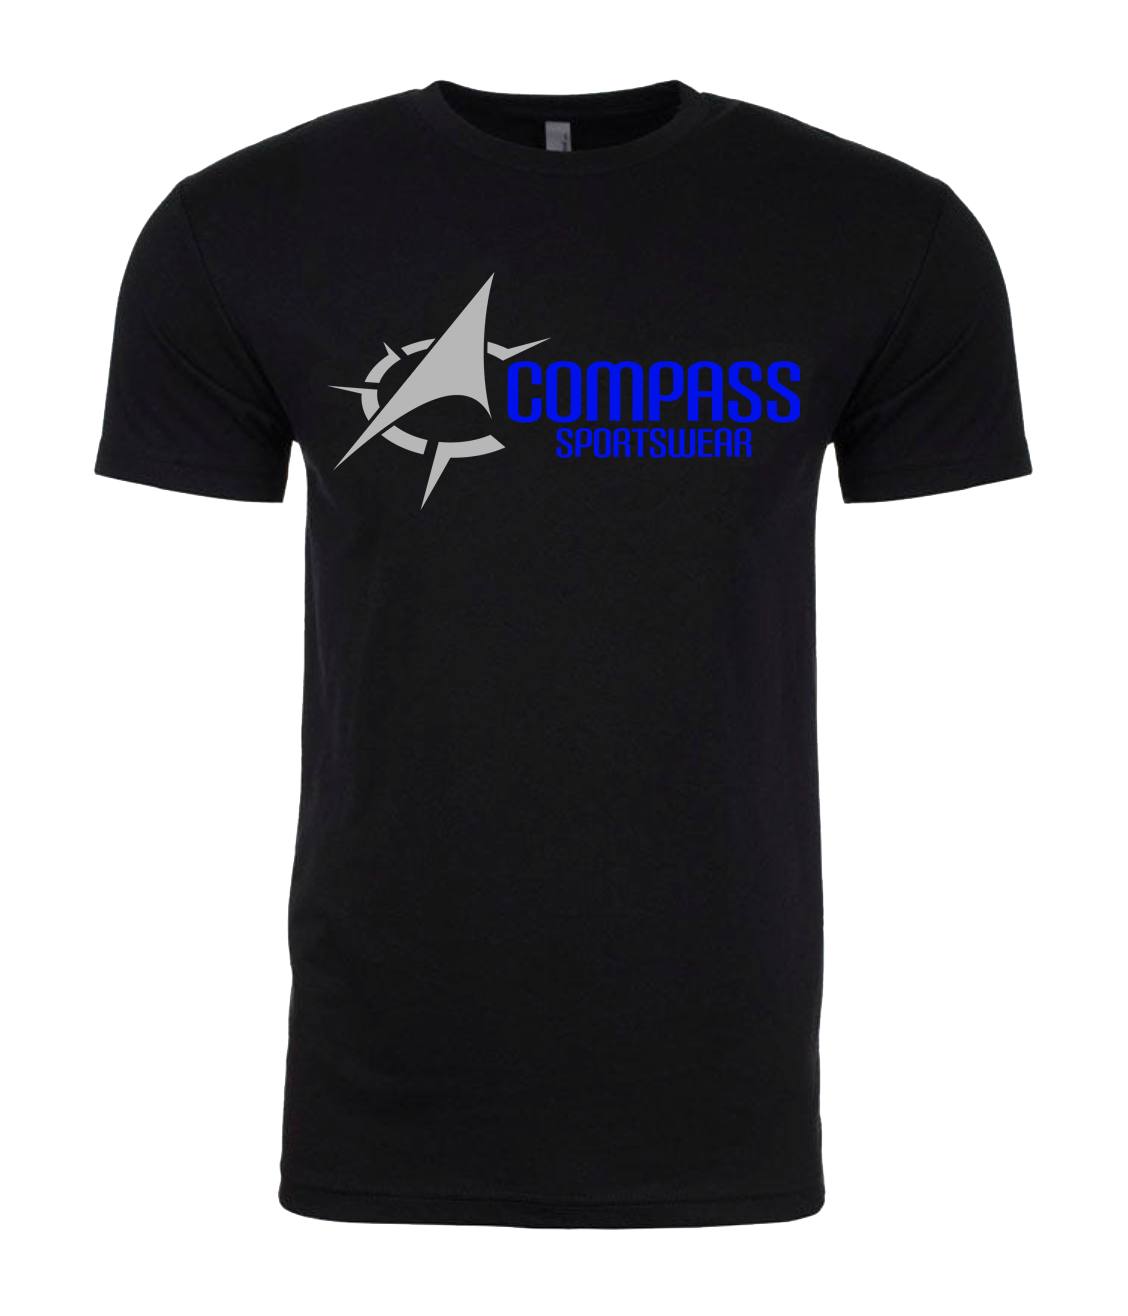 Compass Blue Logo T Shirt